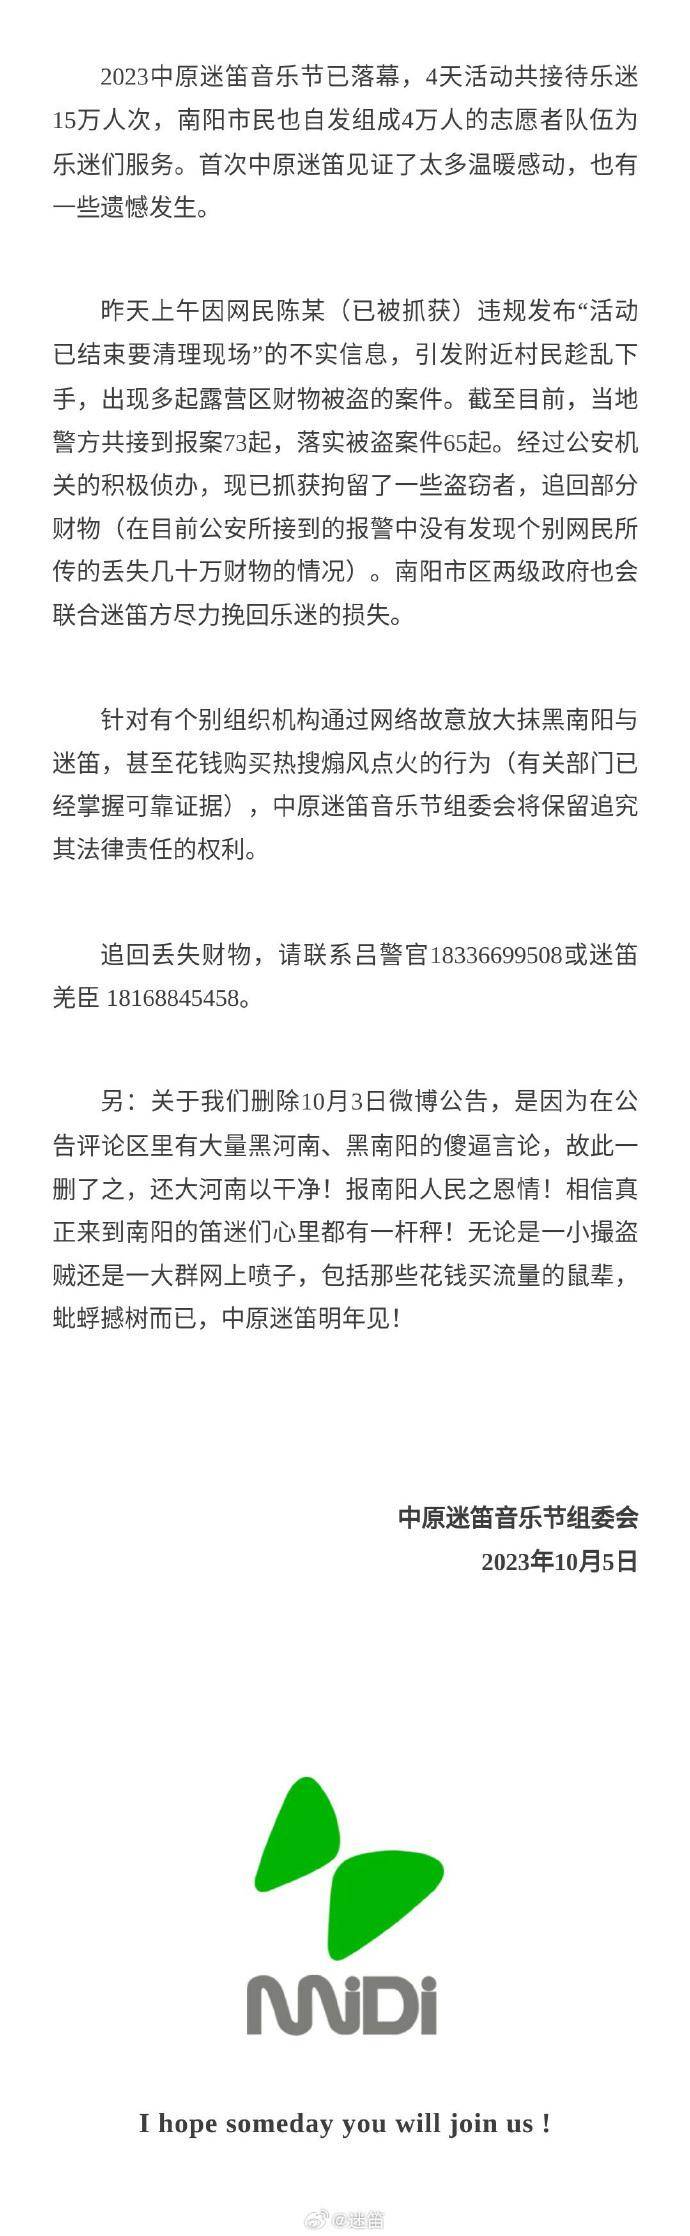 深圳迷笛音乐节官方微博，严正声明，警惕网民违规传播虚假信息，保障观众权益，部分违法行为人已被警方查处。